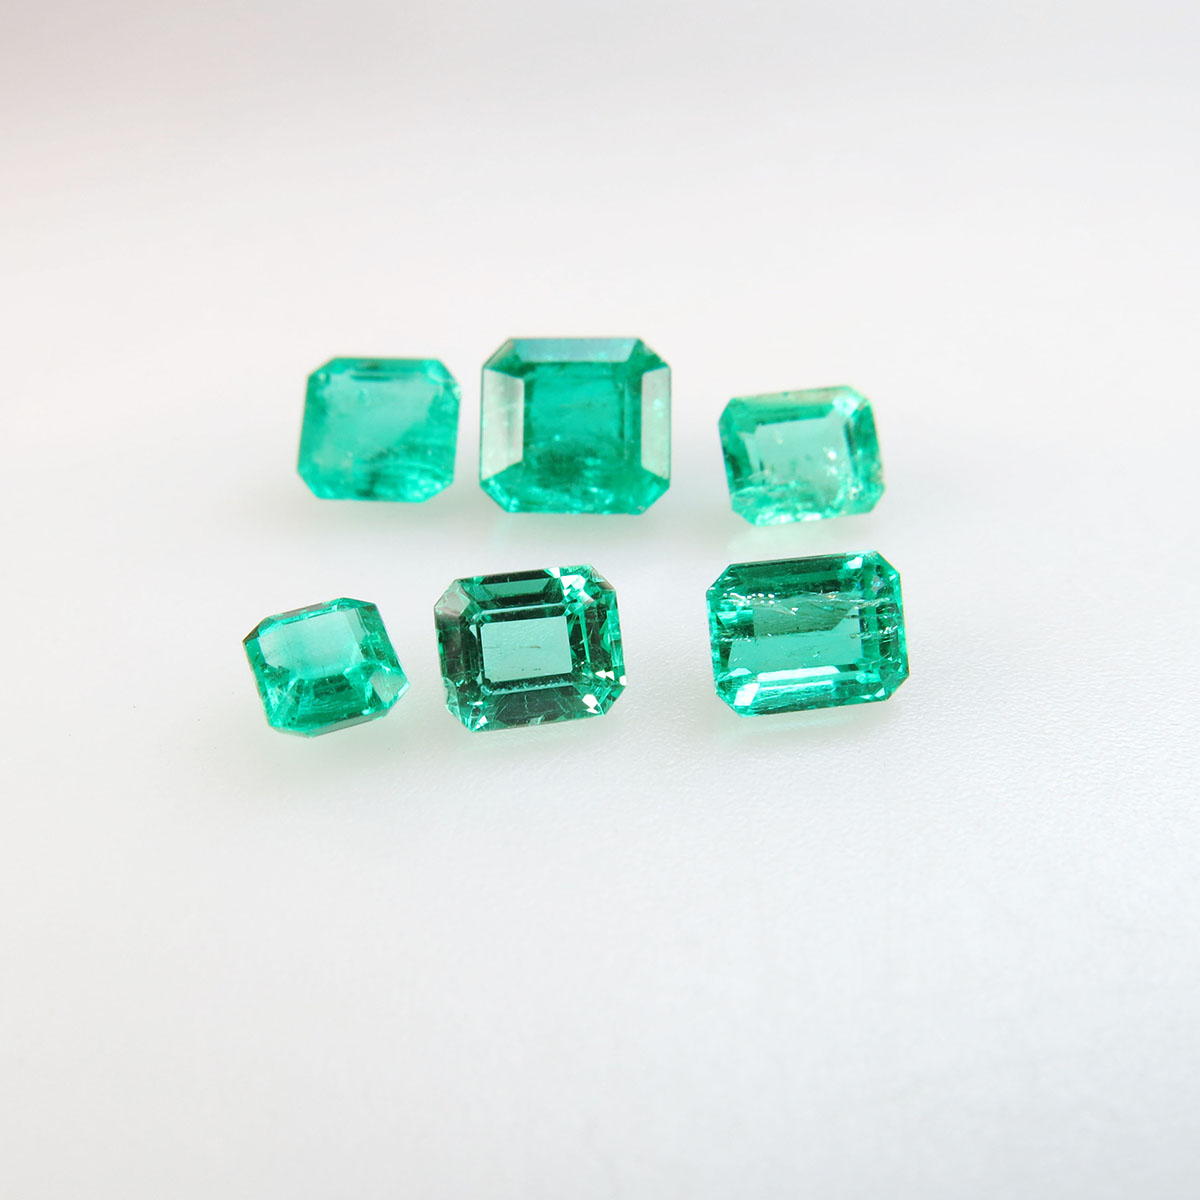 6 Emerald Cut Emeralds